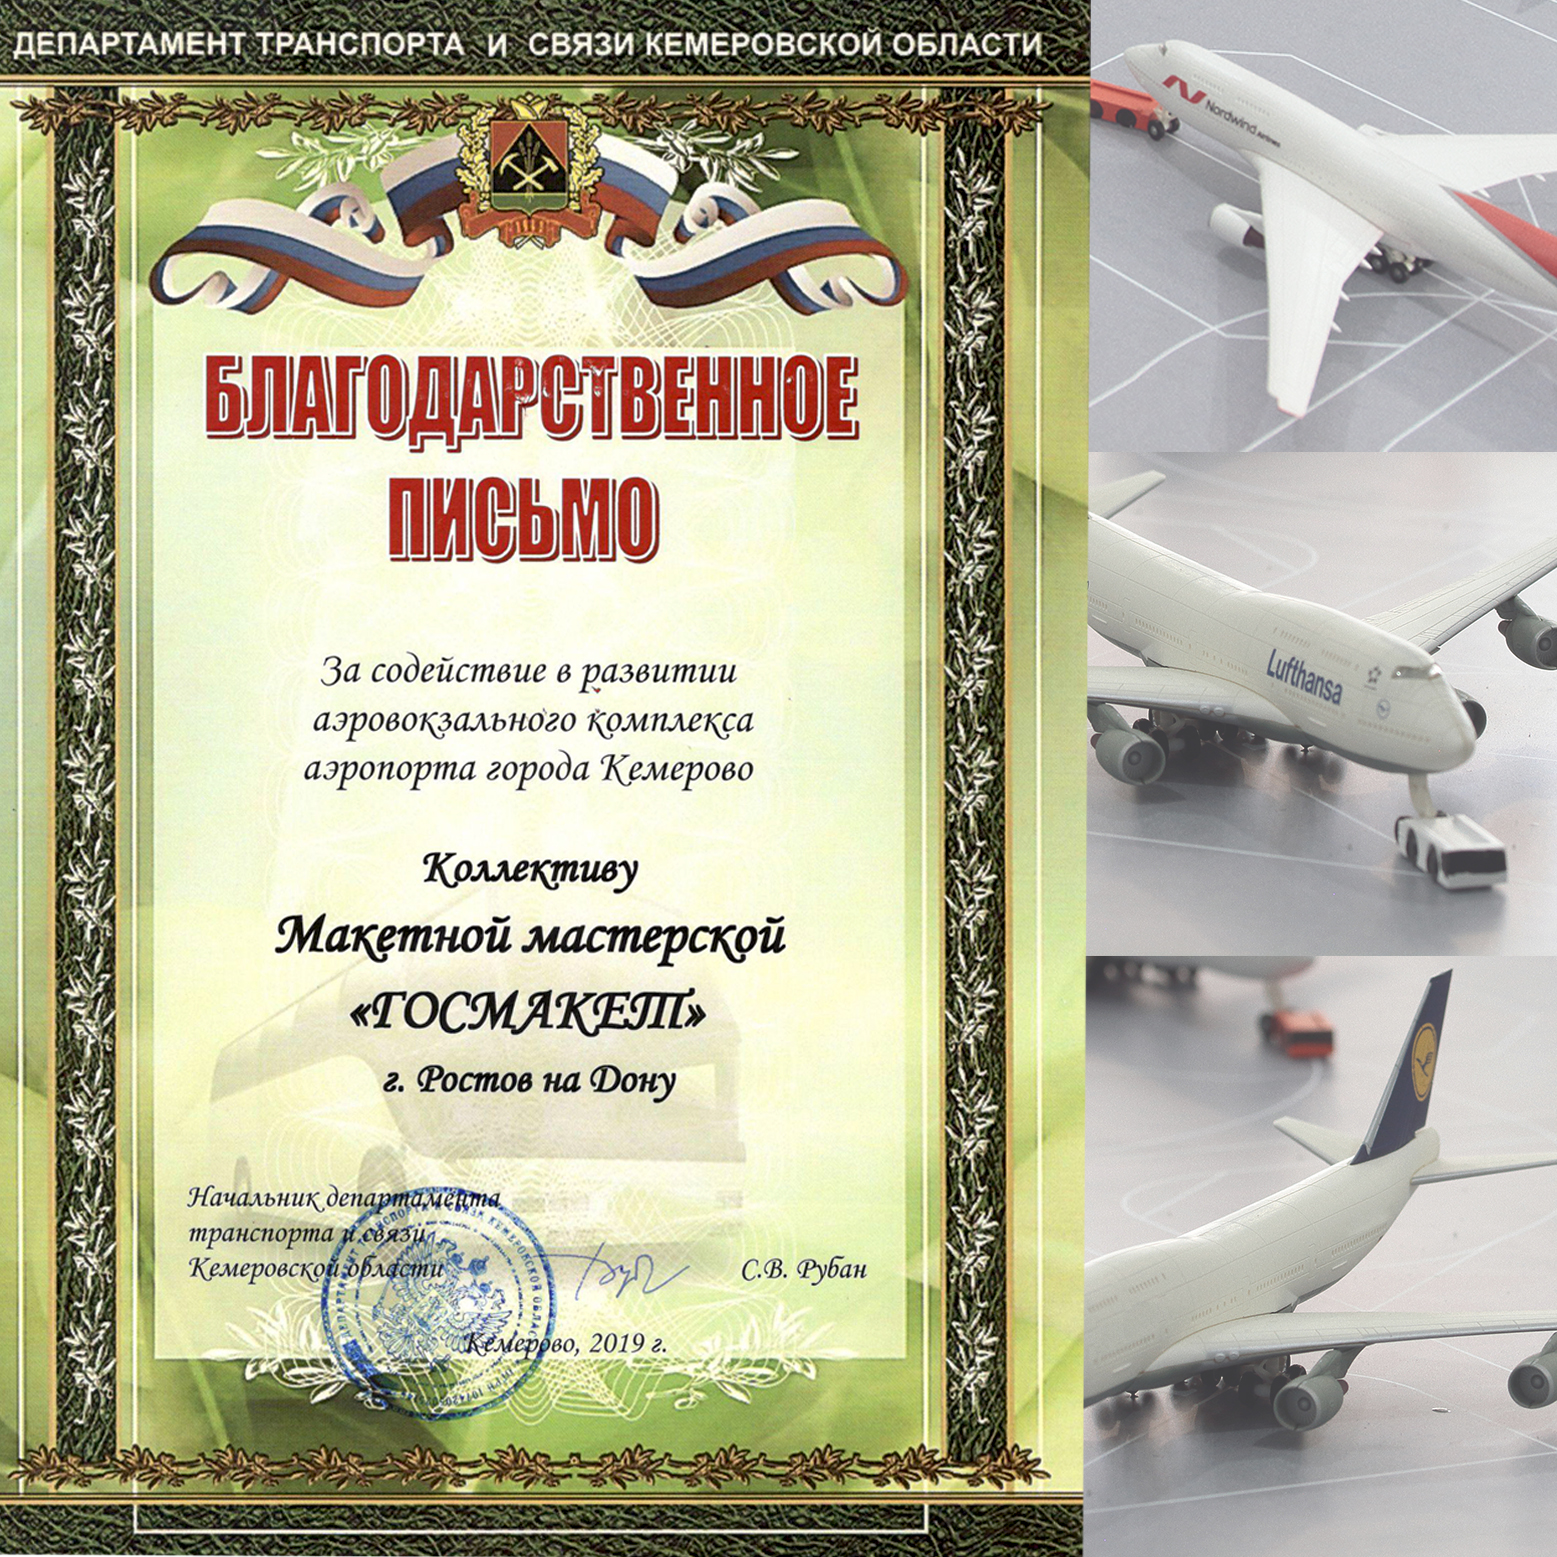 Получили благодарственное письмо от заказчиков макета аэропорта Кемерово